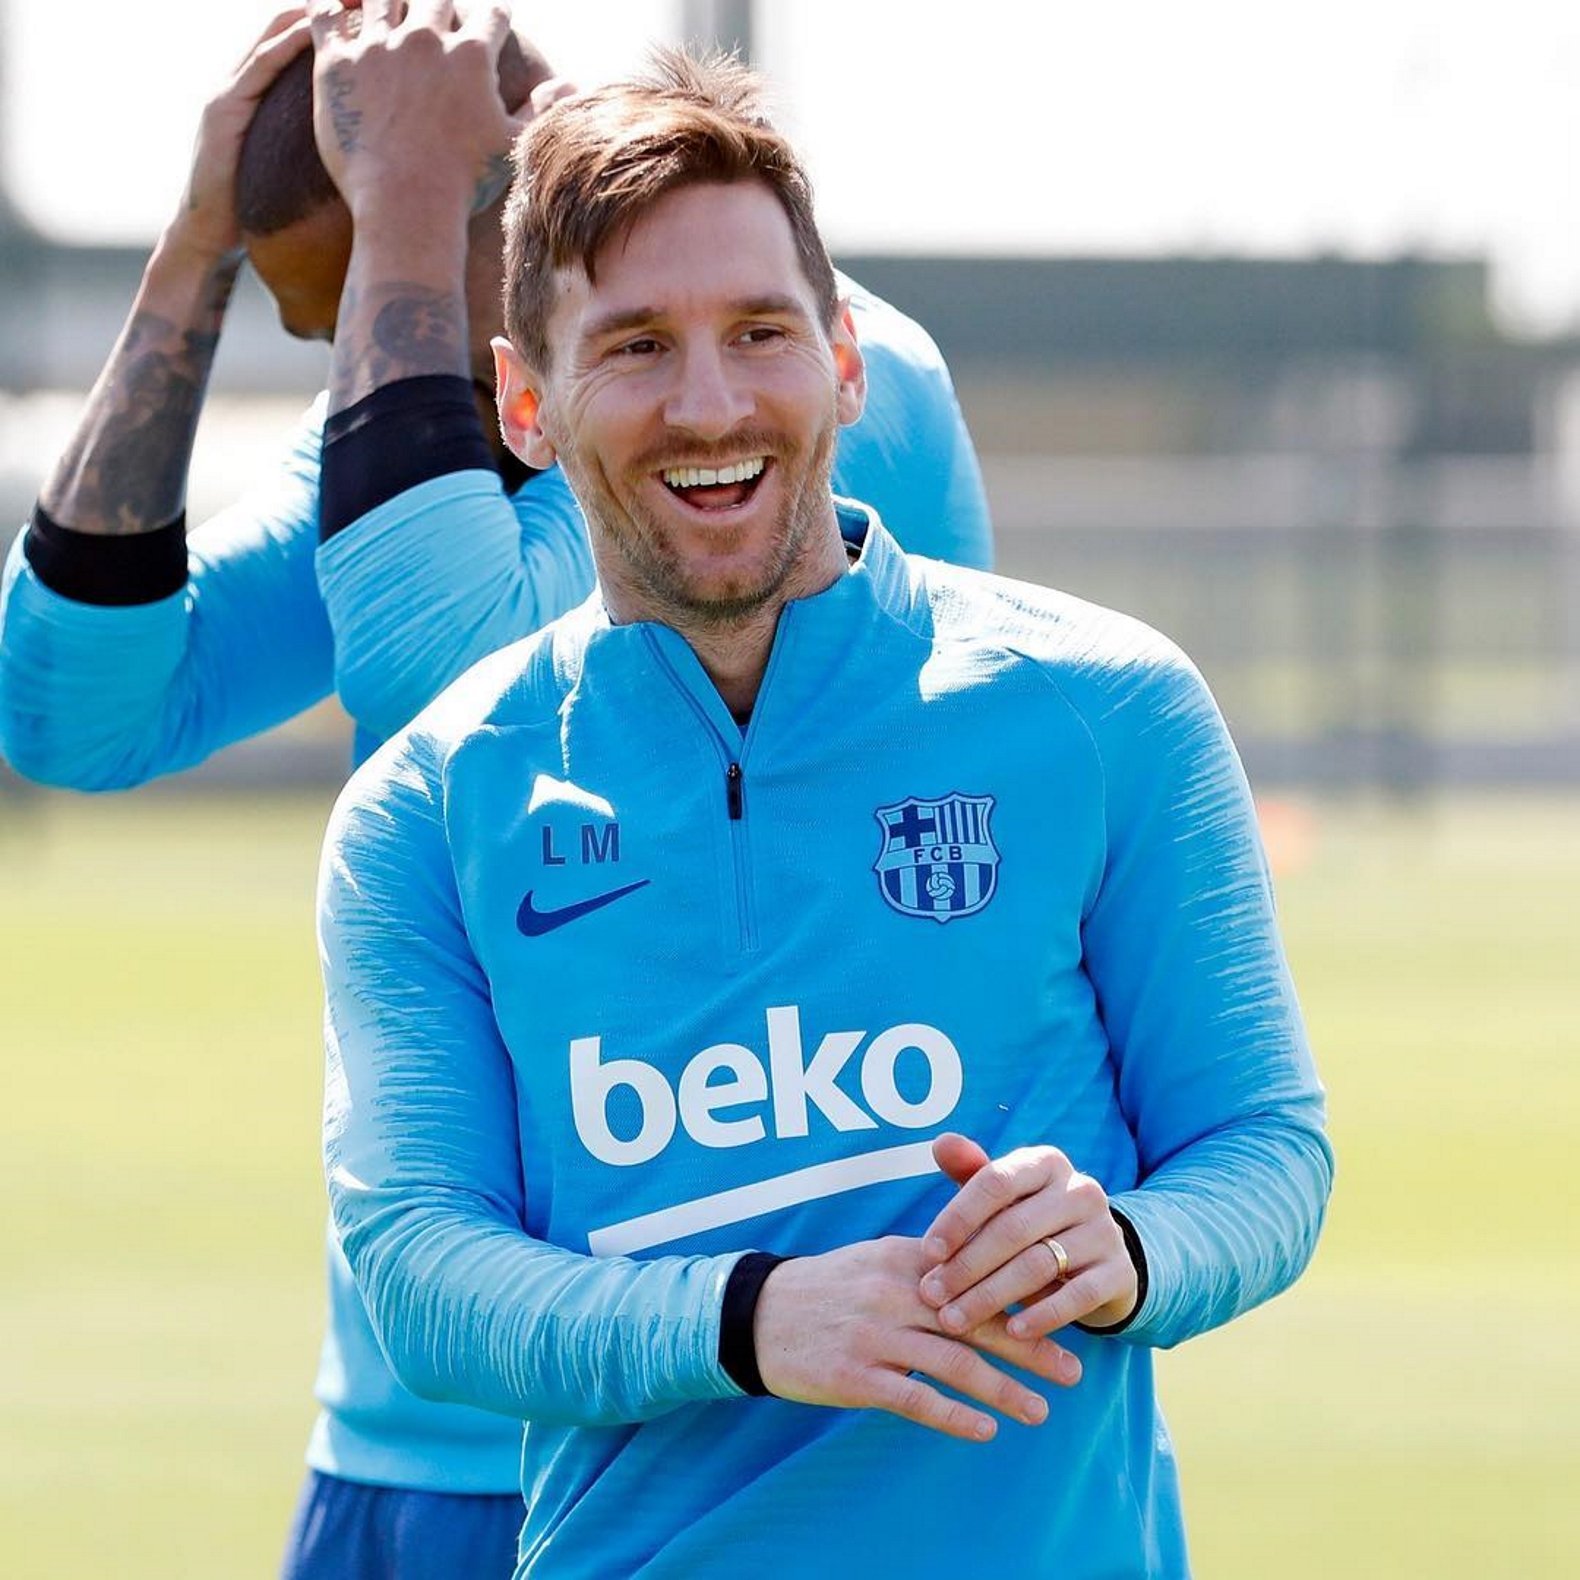 El nyap de la felicitació d'aniversari del Barça a Messi al·lucina els fans